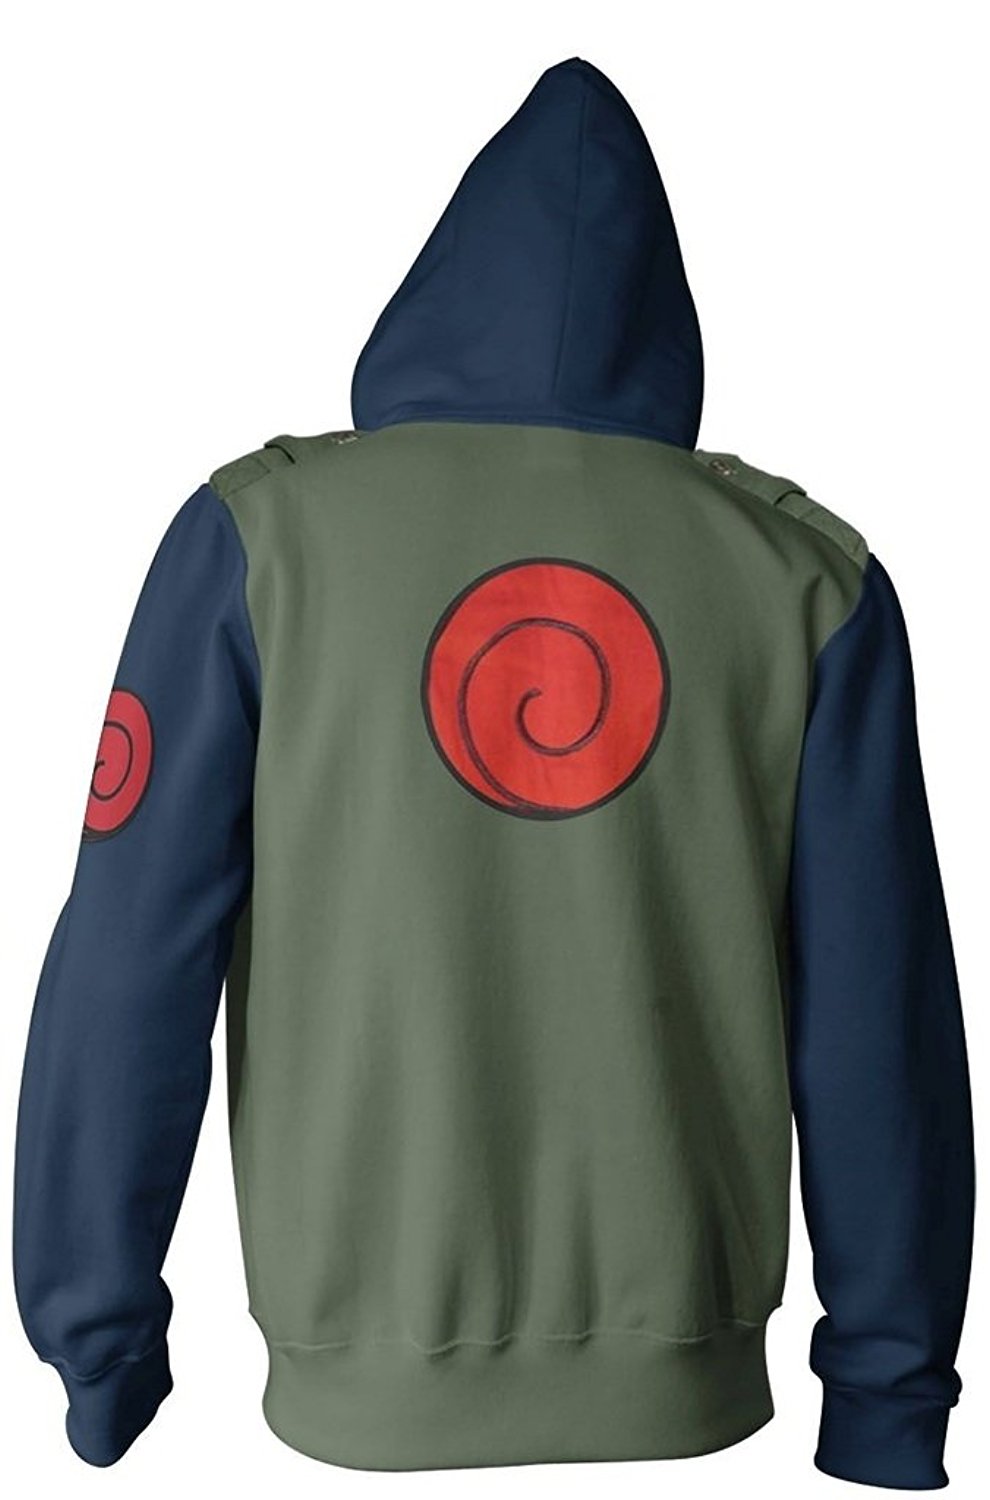 Naruto Kakashi Cosplay Military Adult Fleece Zip Up Hoodie Sweatshirt ...